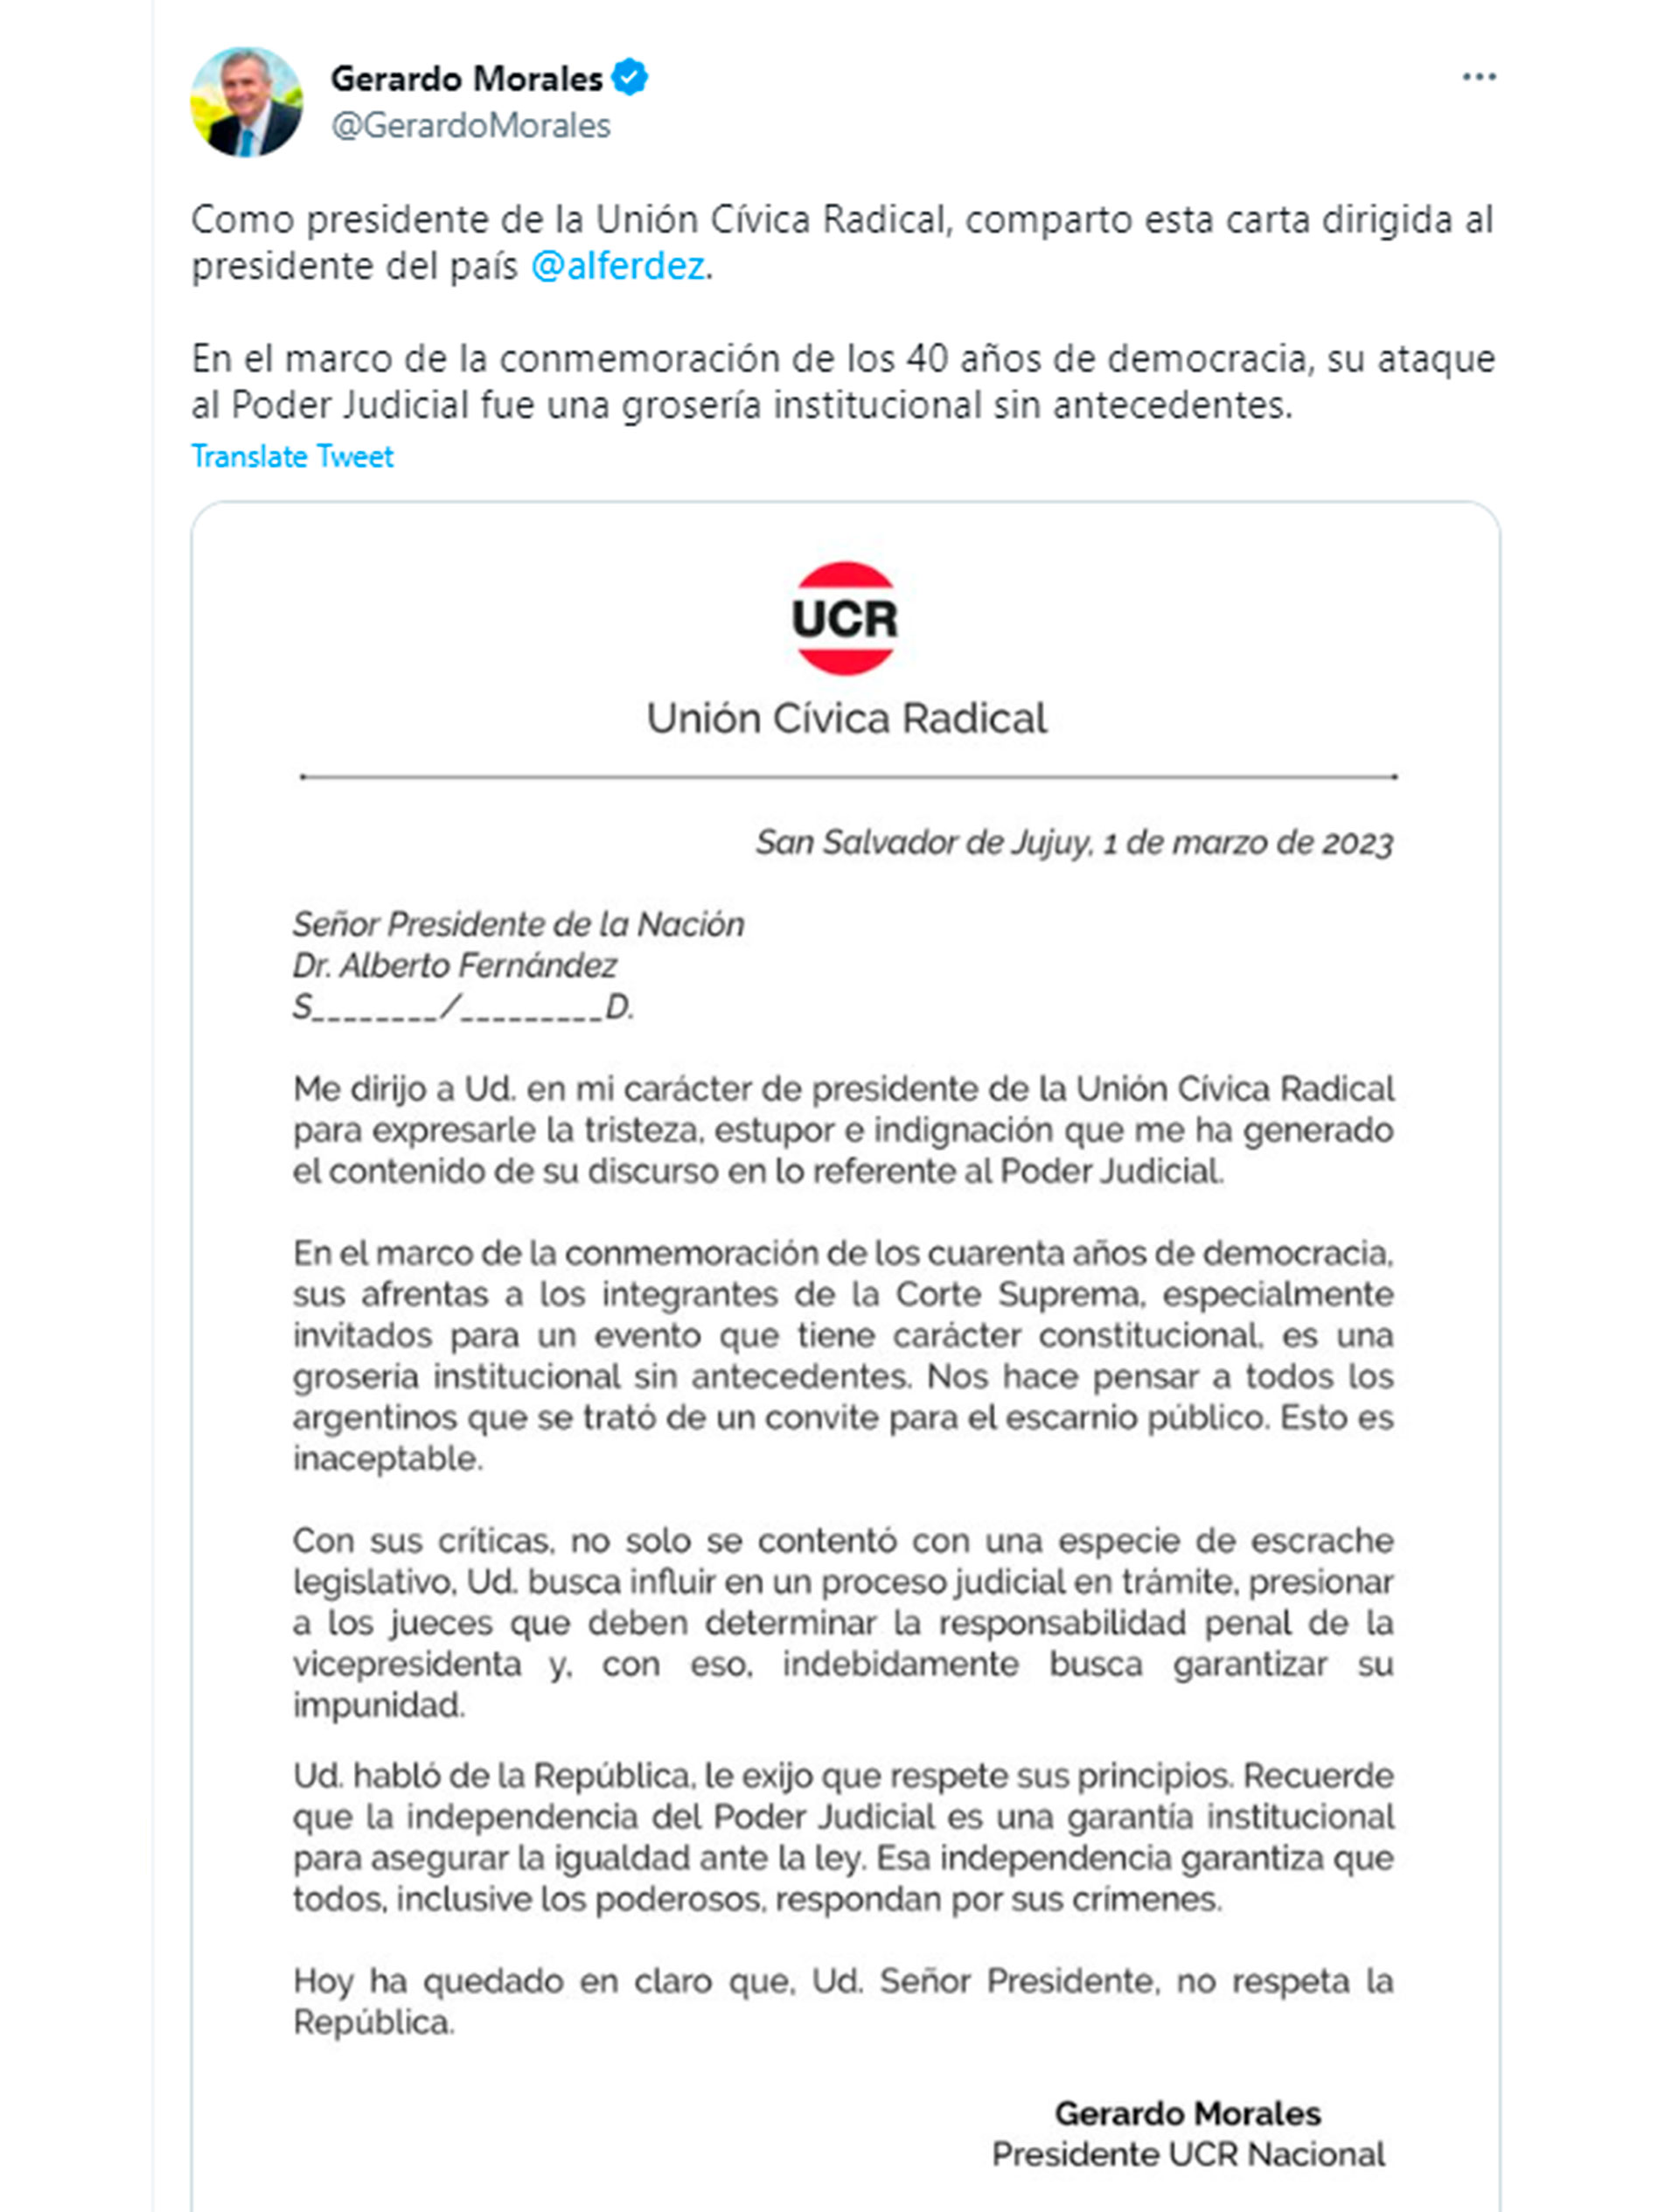 La carta del gobernador de Jujuy publicada en Twitter (@GerardoMorales)